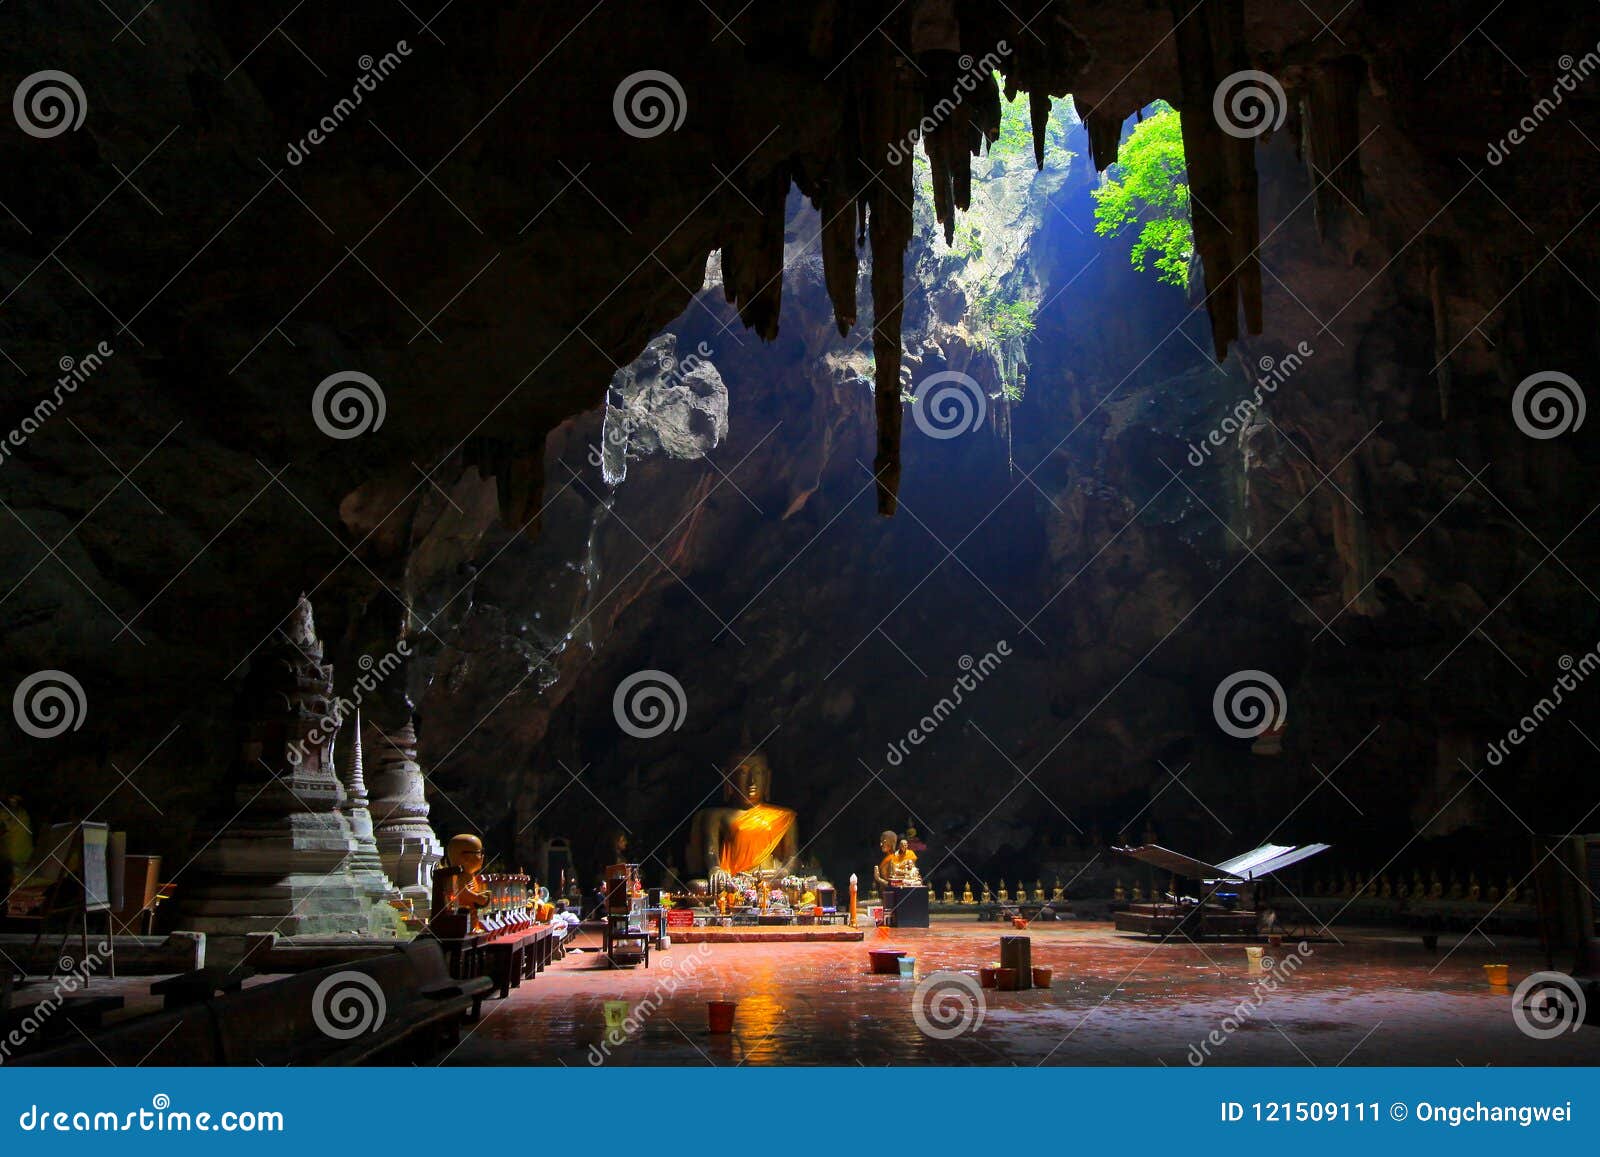 tham khao luang cave, phetchaburi province, thailand